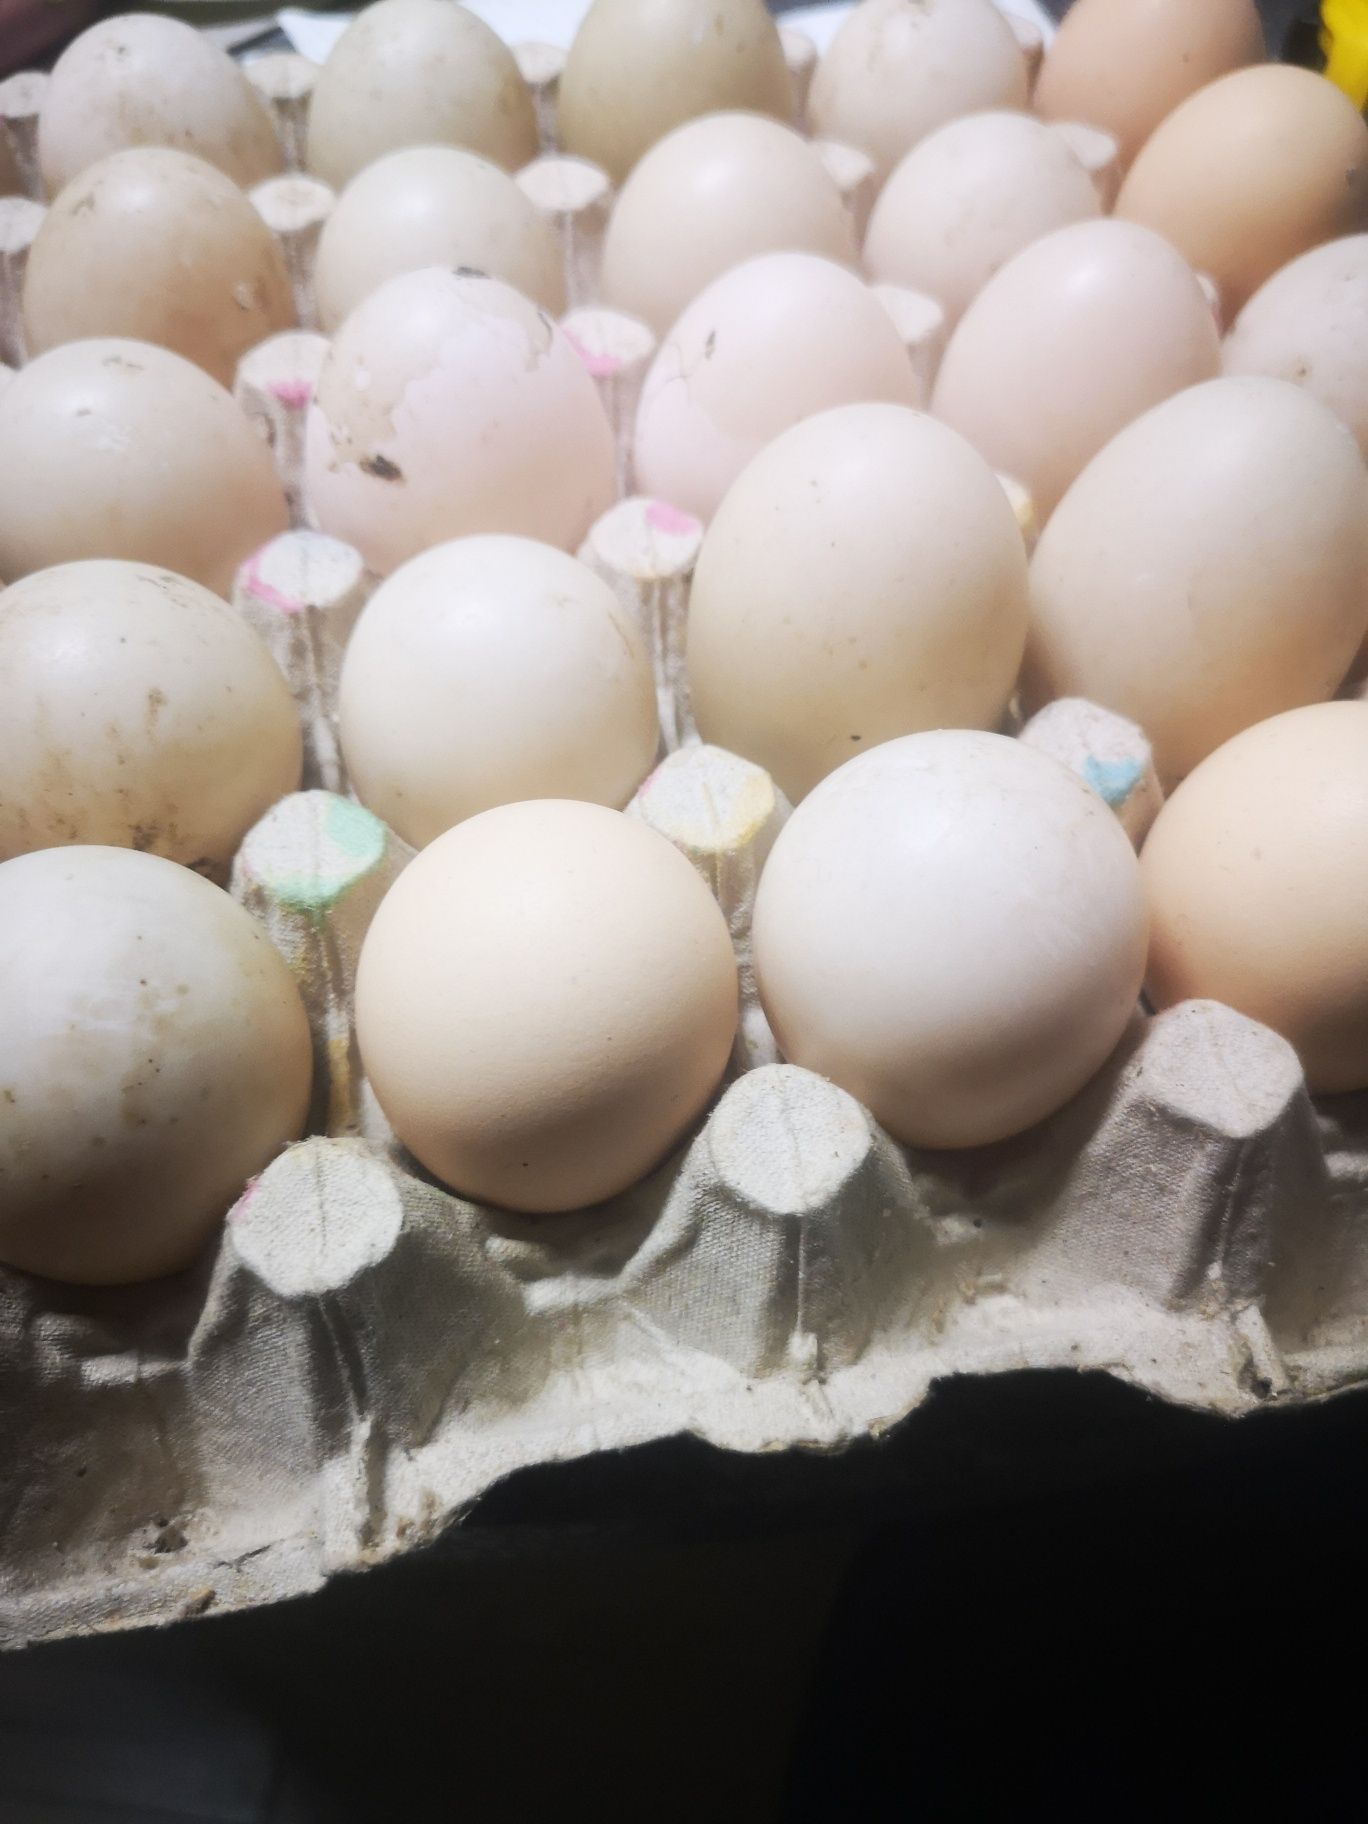 Ouă rață leseasca, ecologice, crescute natural, 2lei